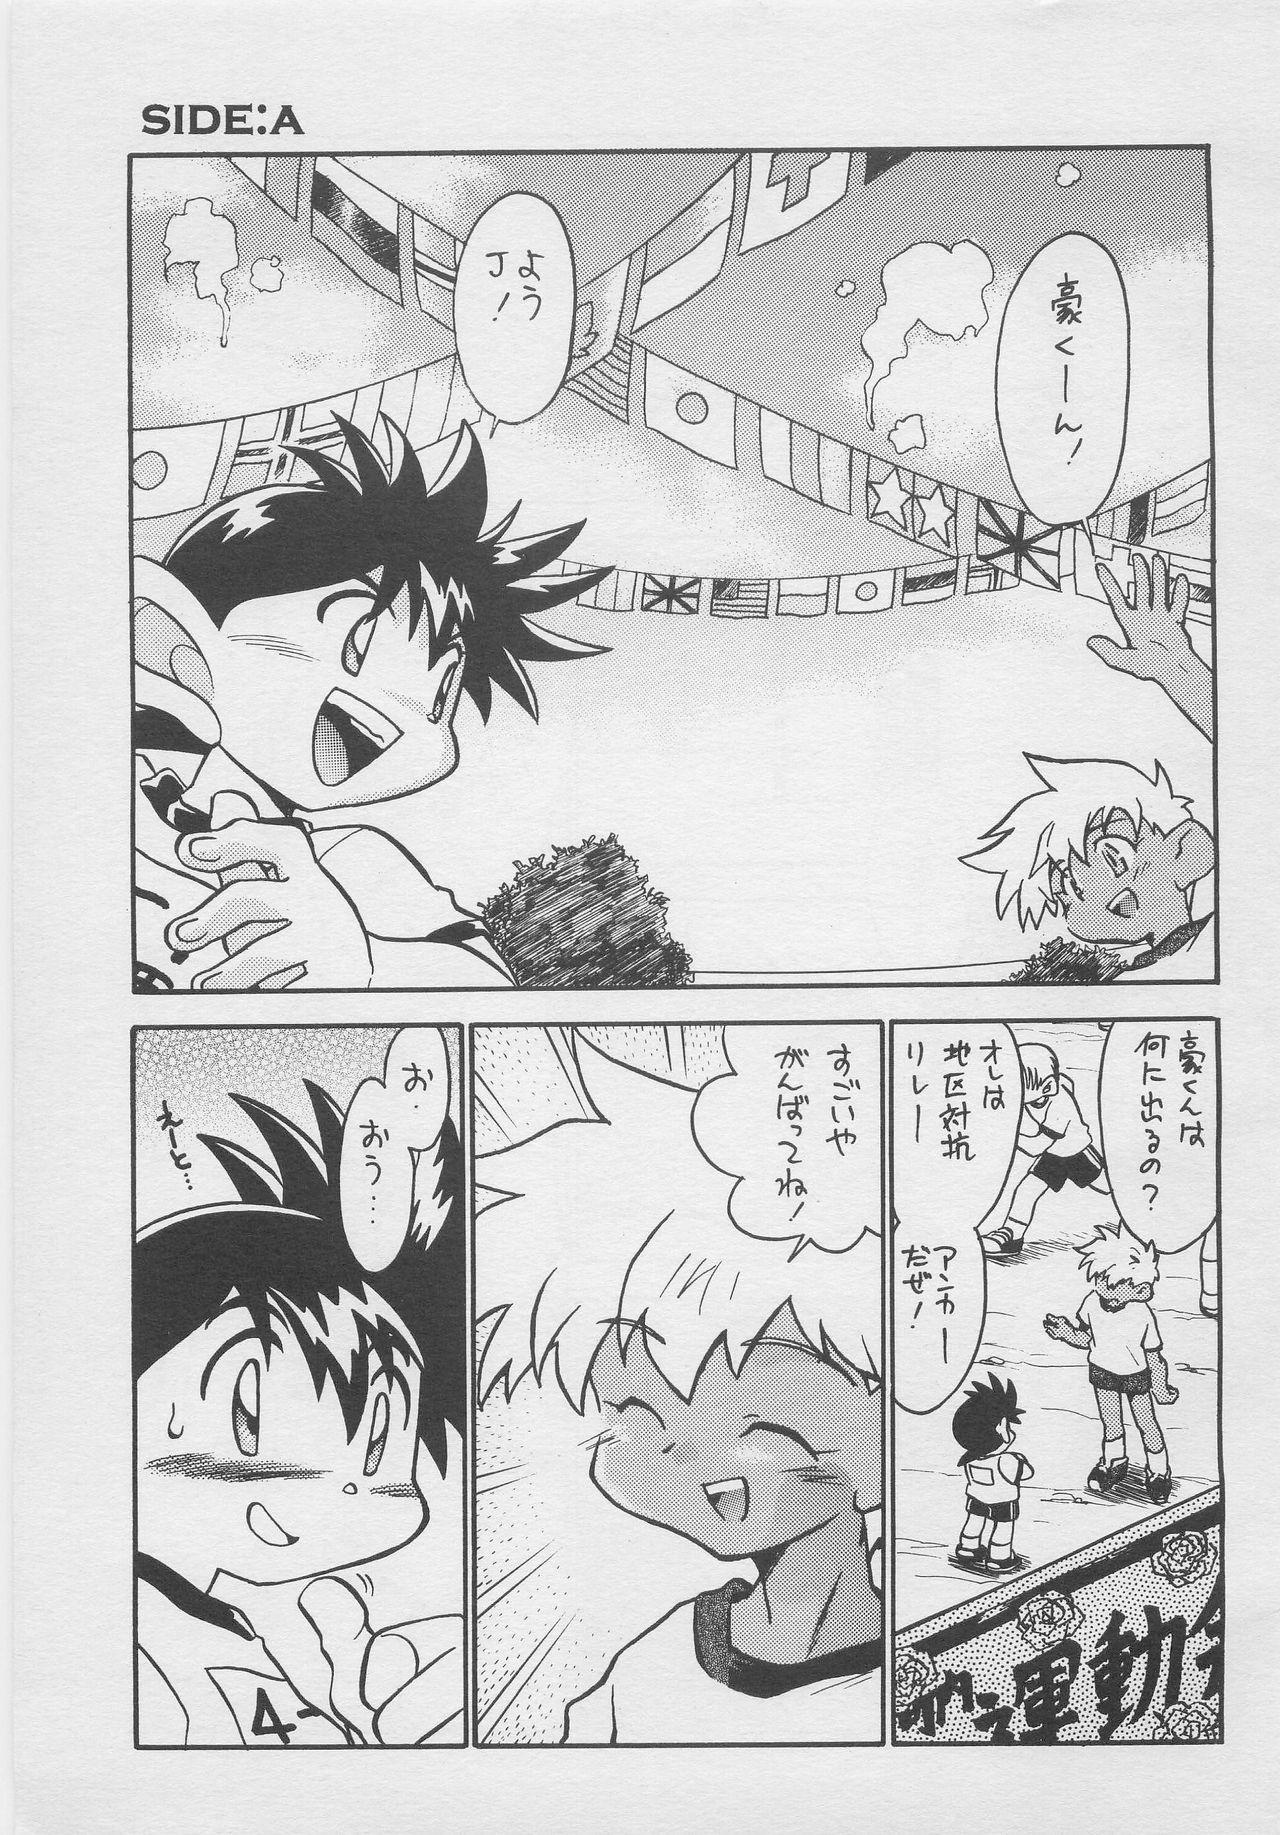 Homemade CONDMANIA - Bakusou kyoudai lets and go Anime - Page 4